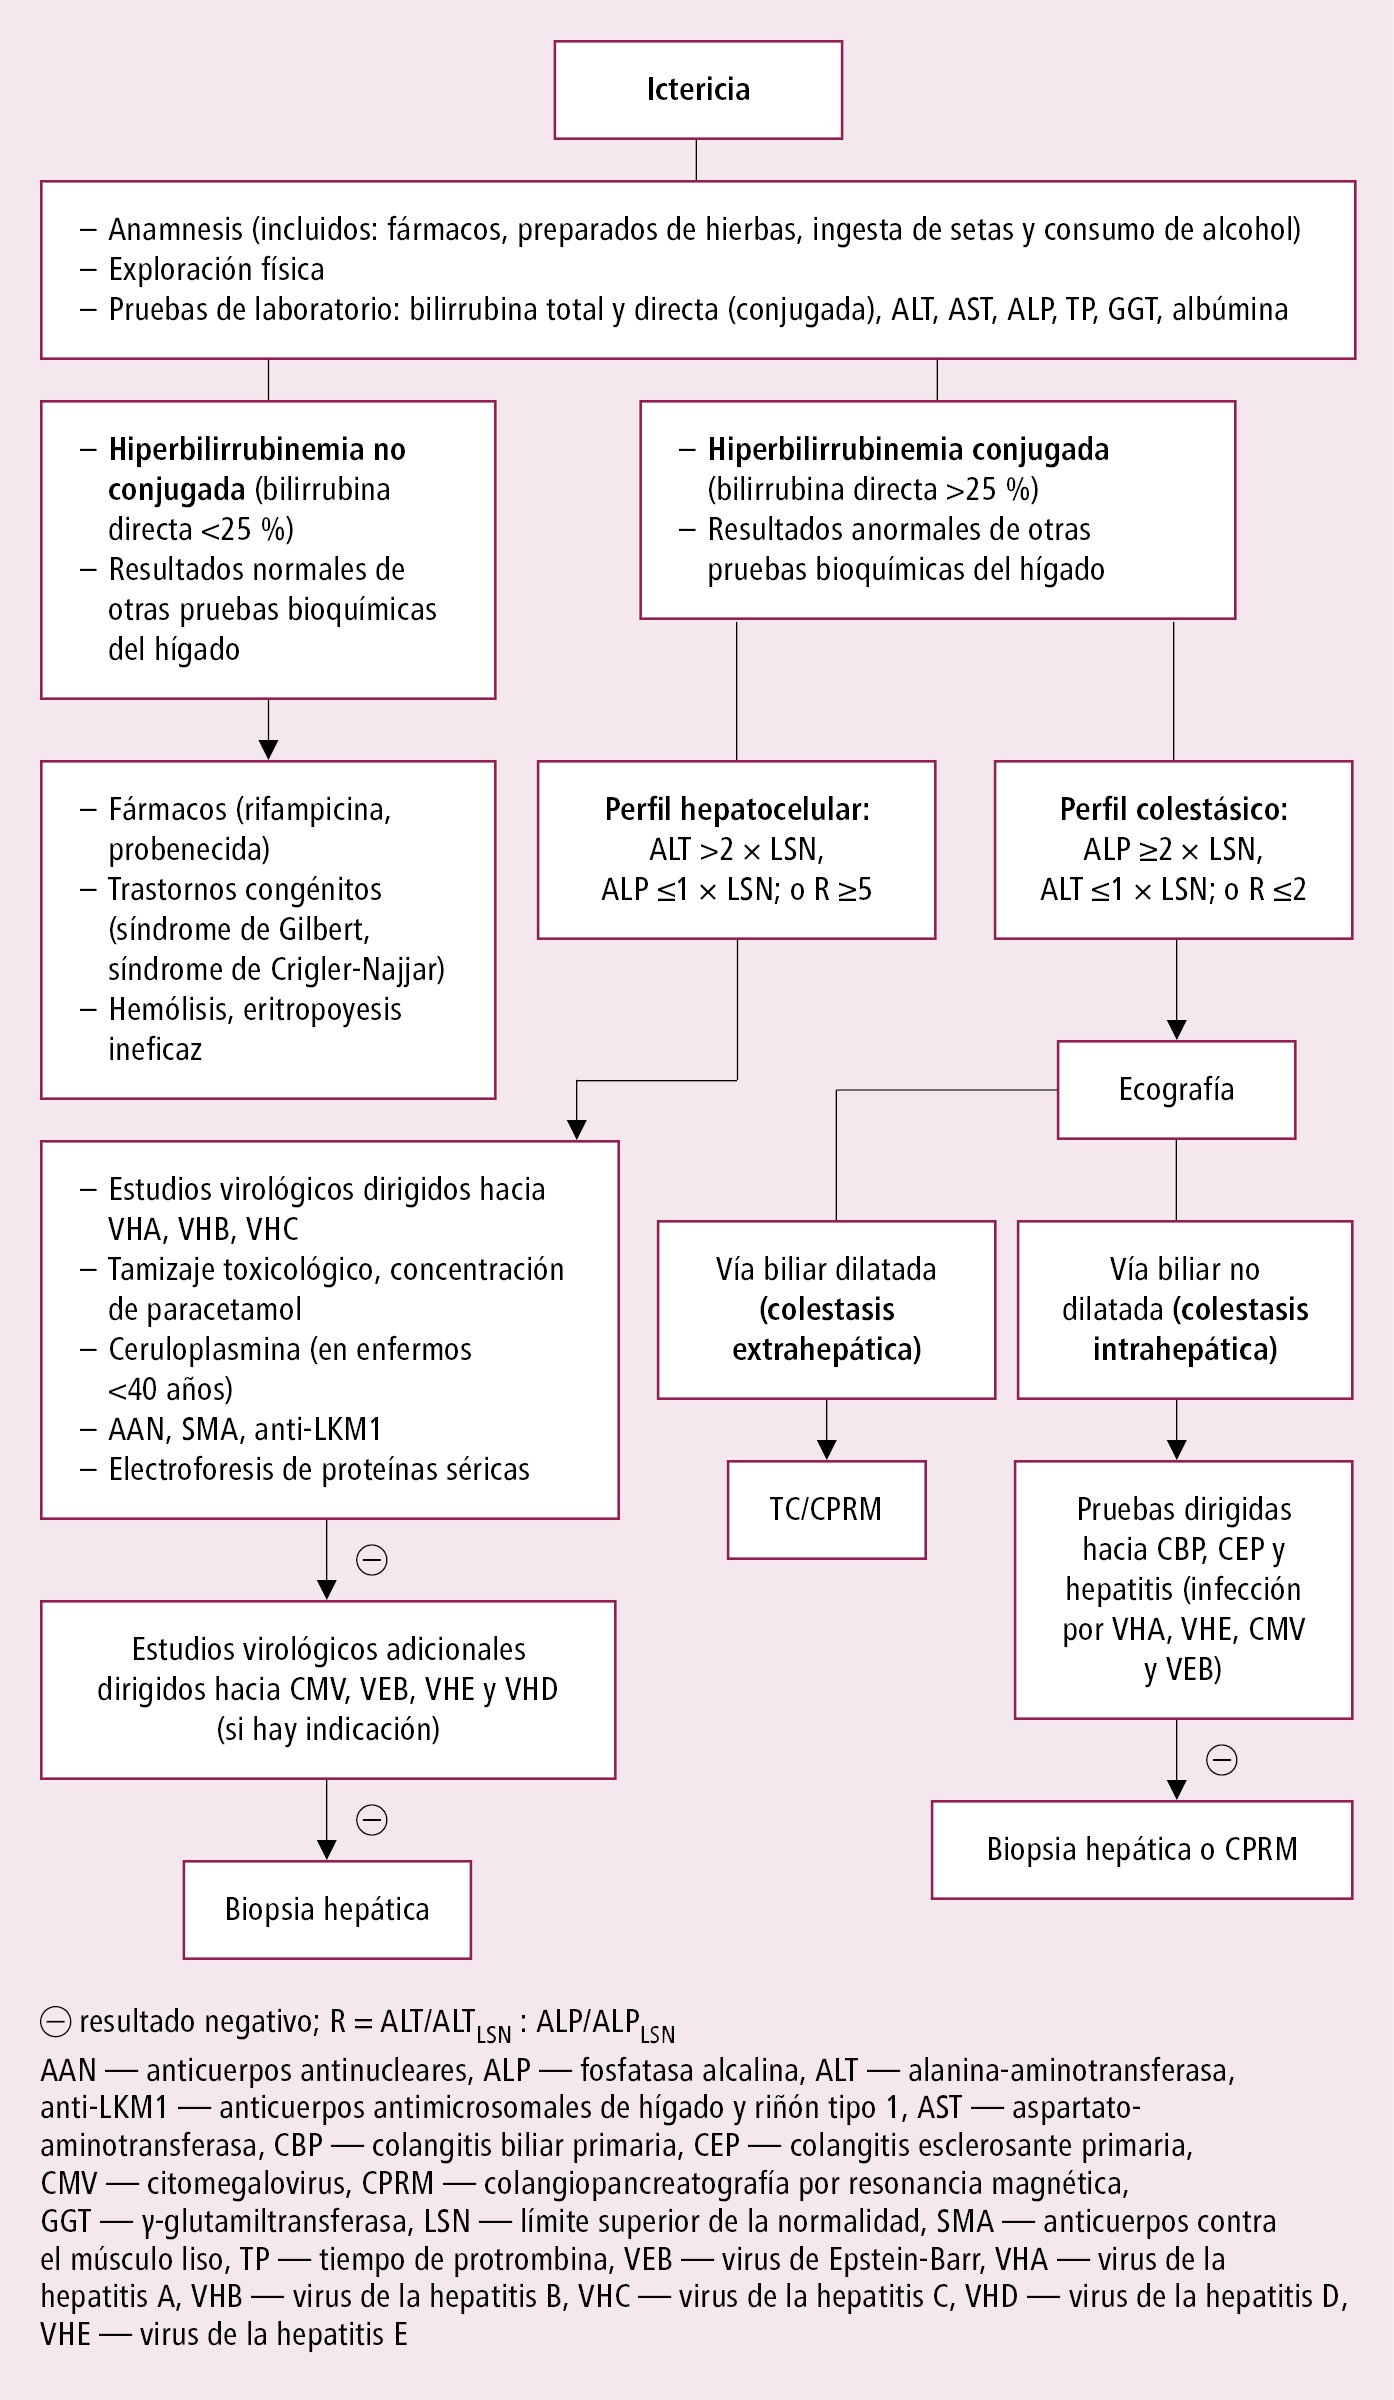    Fig. 1.27-1.  Diagnóstico de la ictericia 